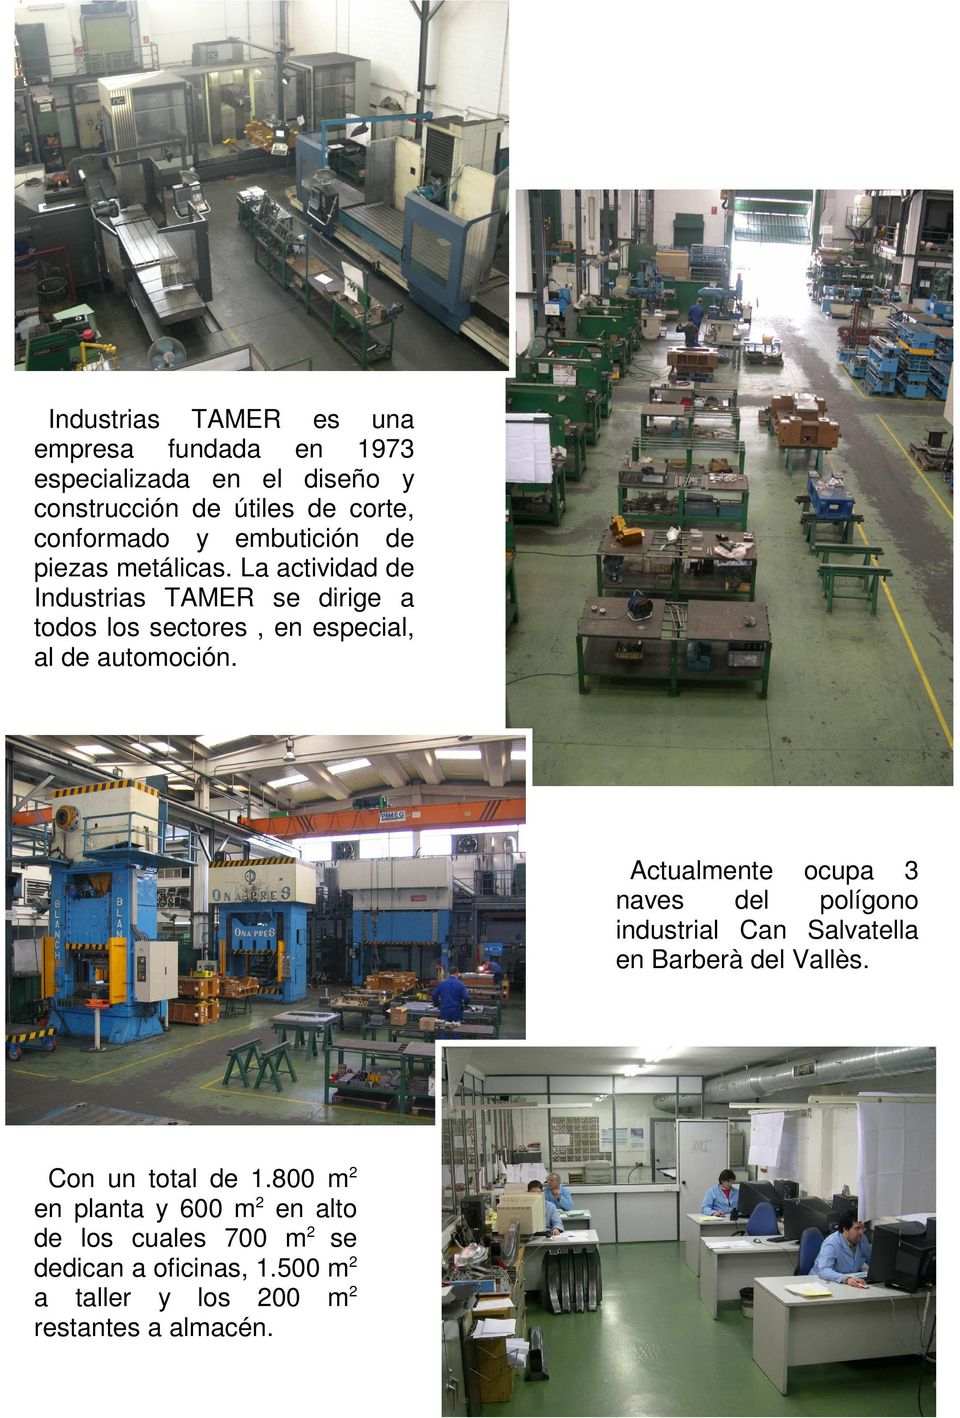 La actividad de Industrias TAMER se dirige a todos los sectores, en especial, al de automoción.